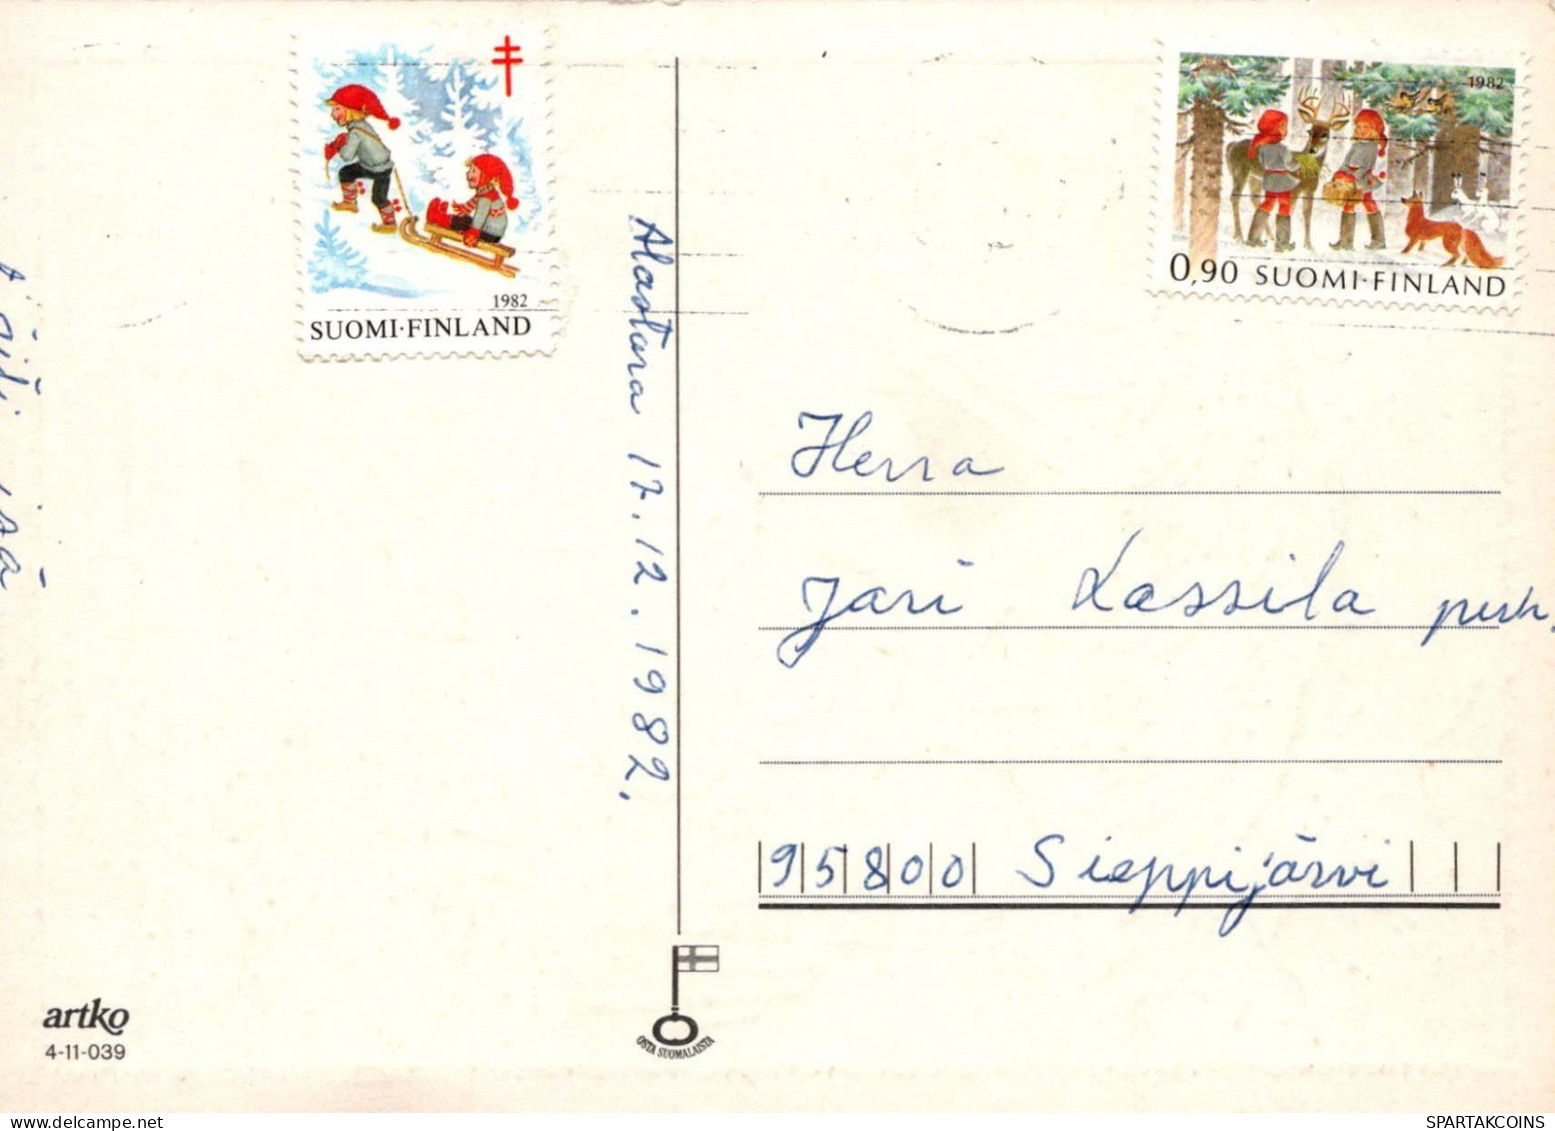 ANGE Noël Bébé JÉSUS Vintage Carte Postale CPSM #PBP280.A - Anges